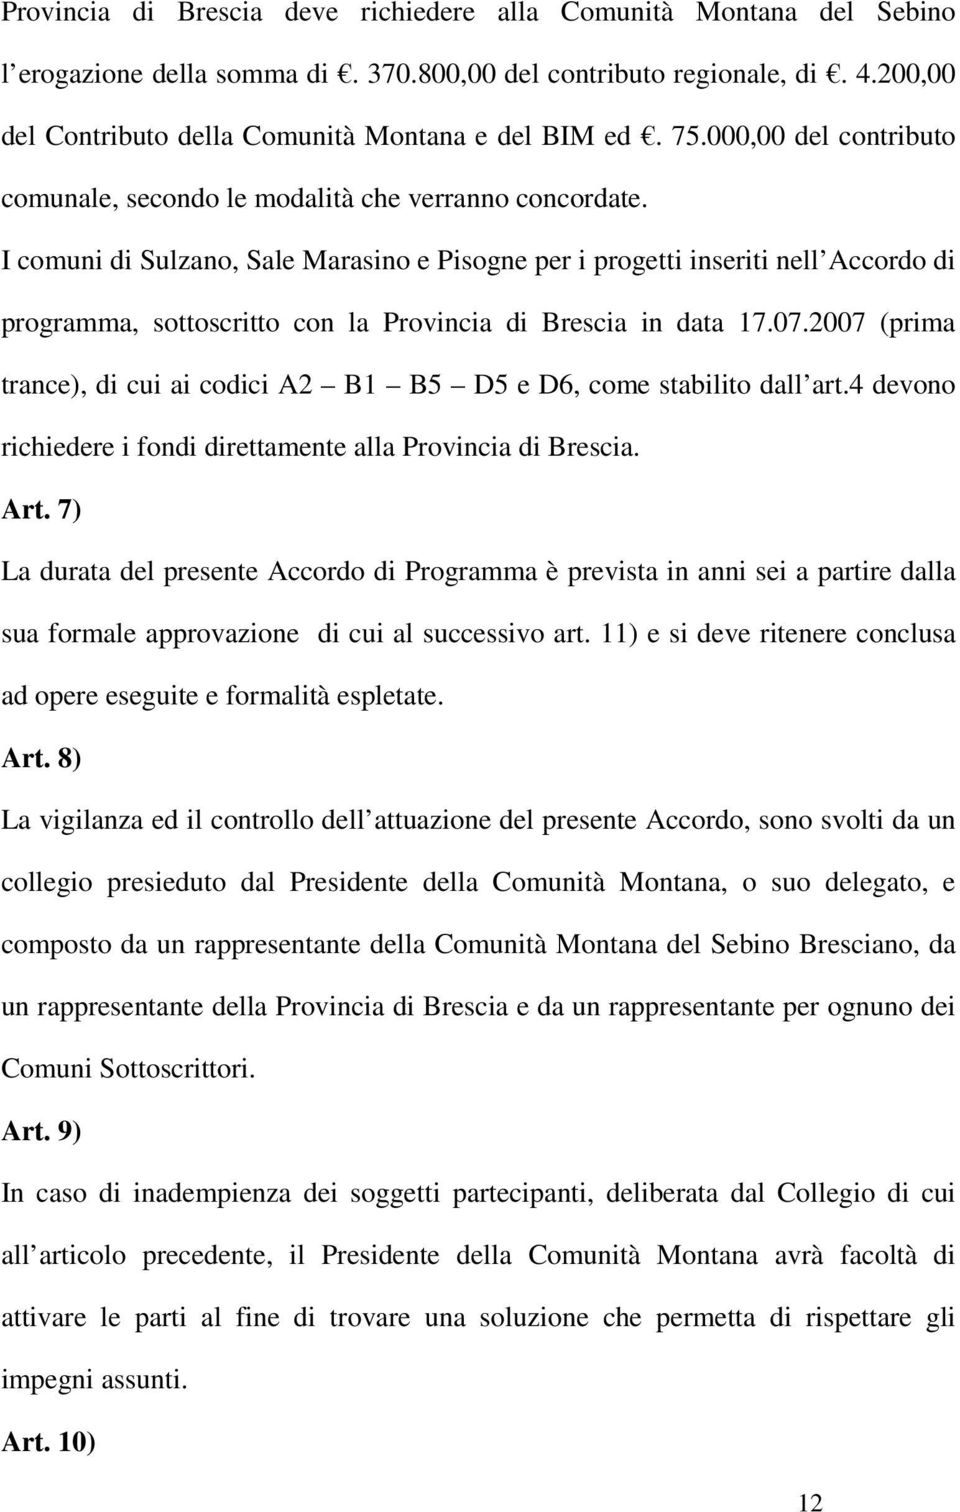 I comuni di Sulzano, Sale Marasino e Pisogne per i progetti inseriti nell Accordo di programma, sottoscritto con la Provincia di Brescia in data 17.07.